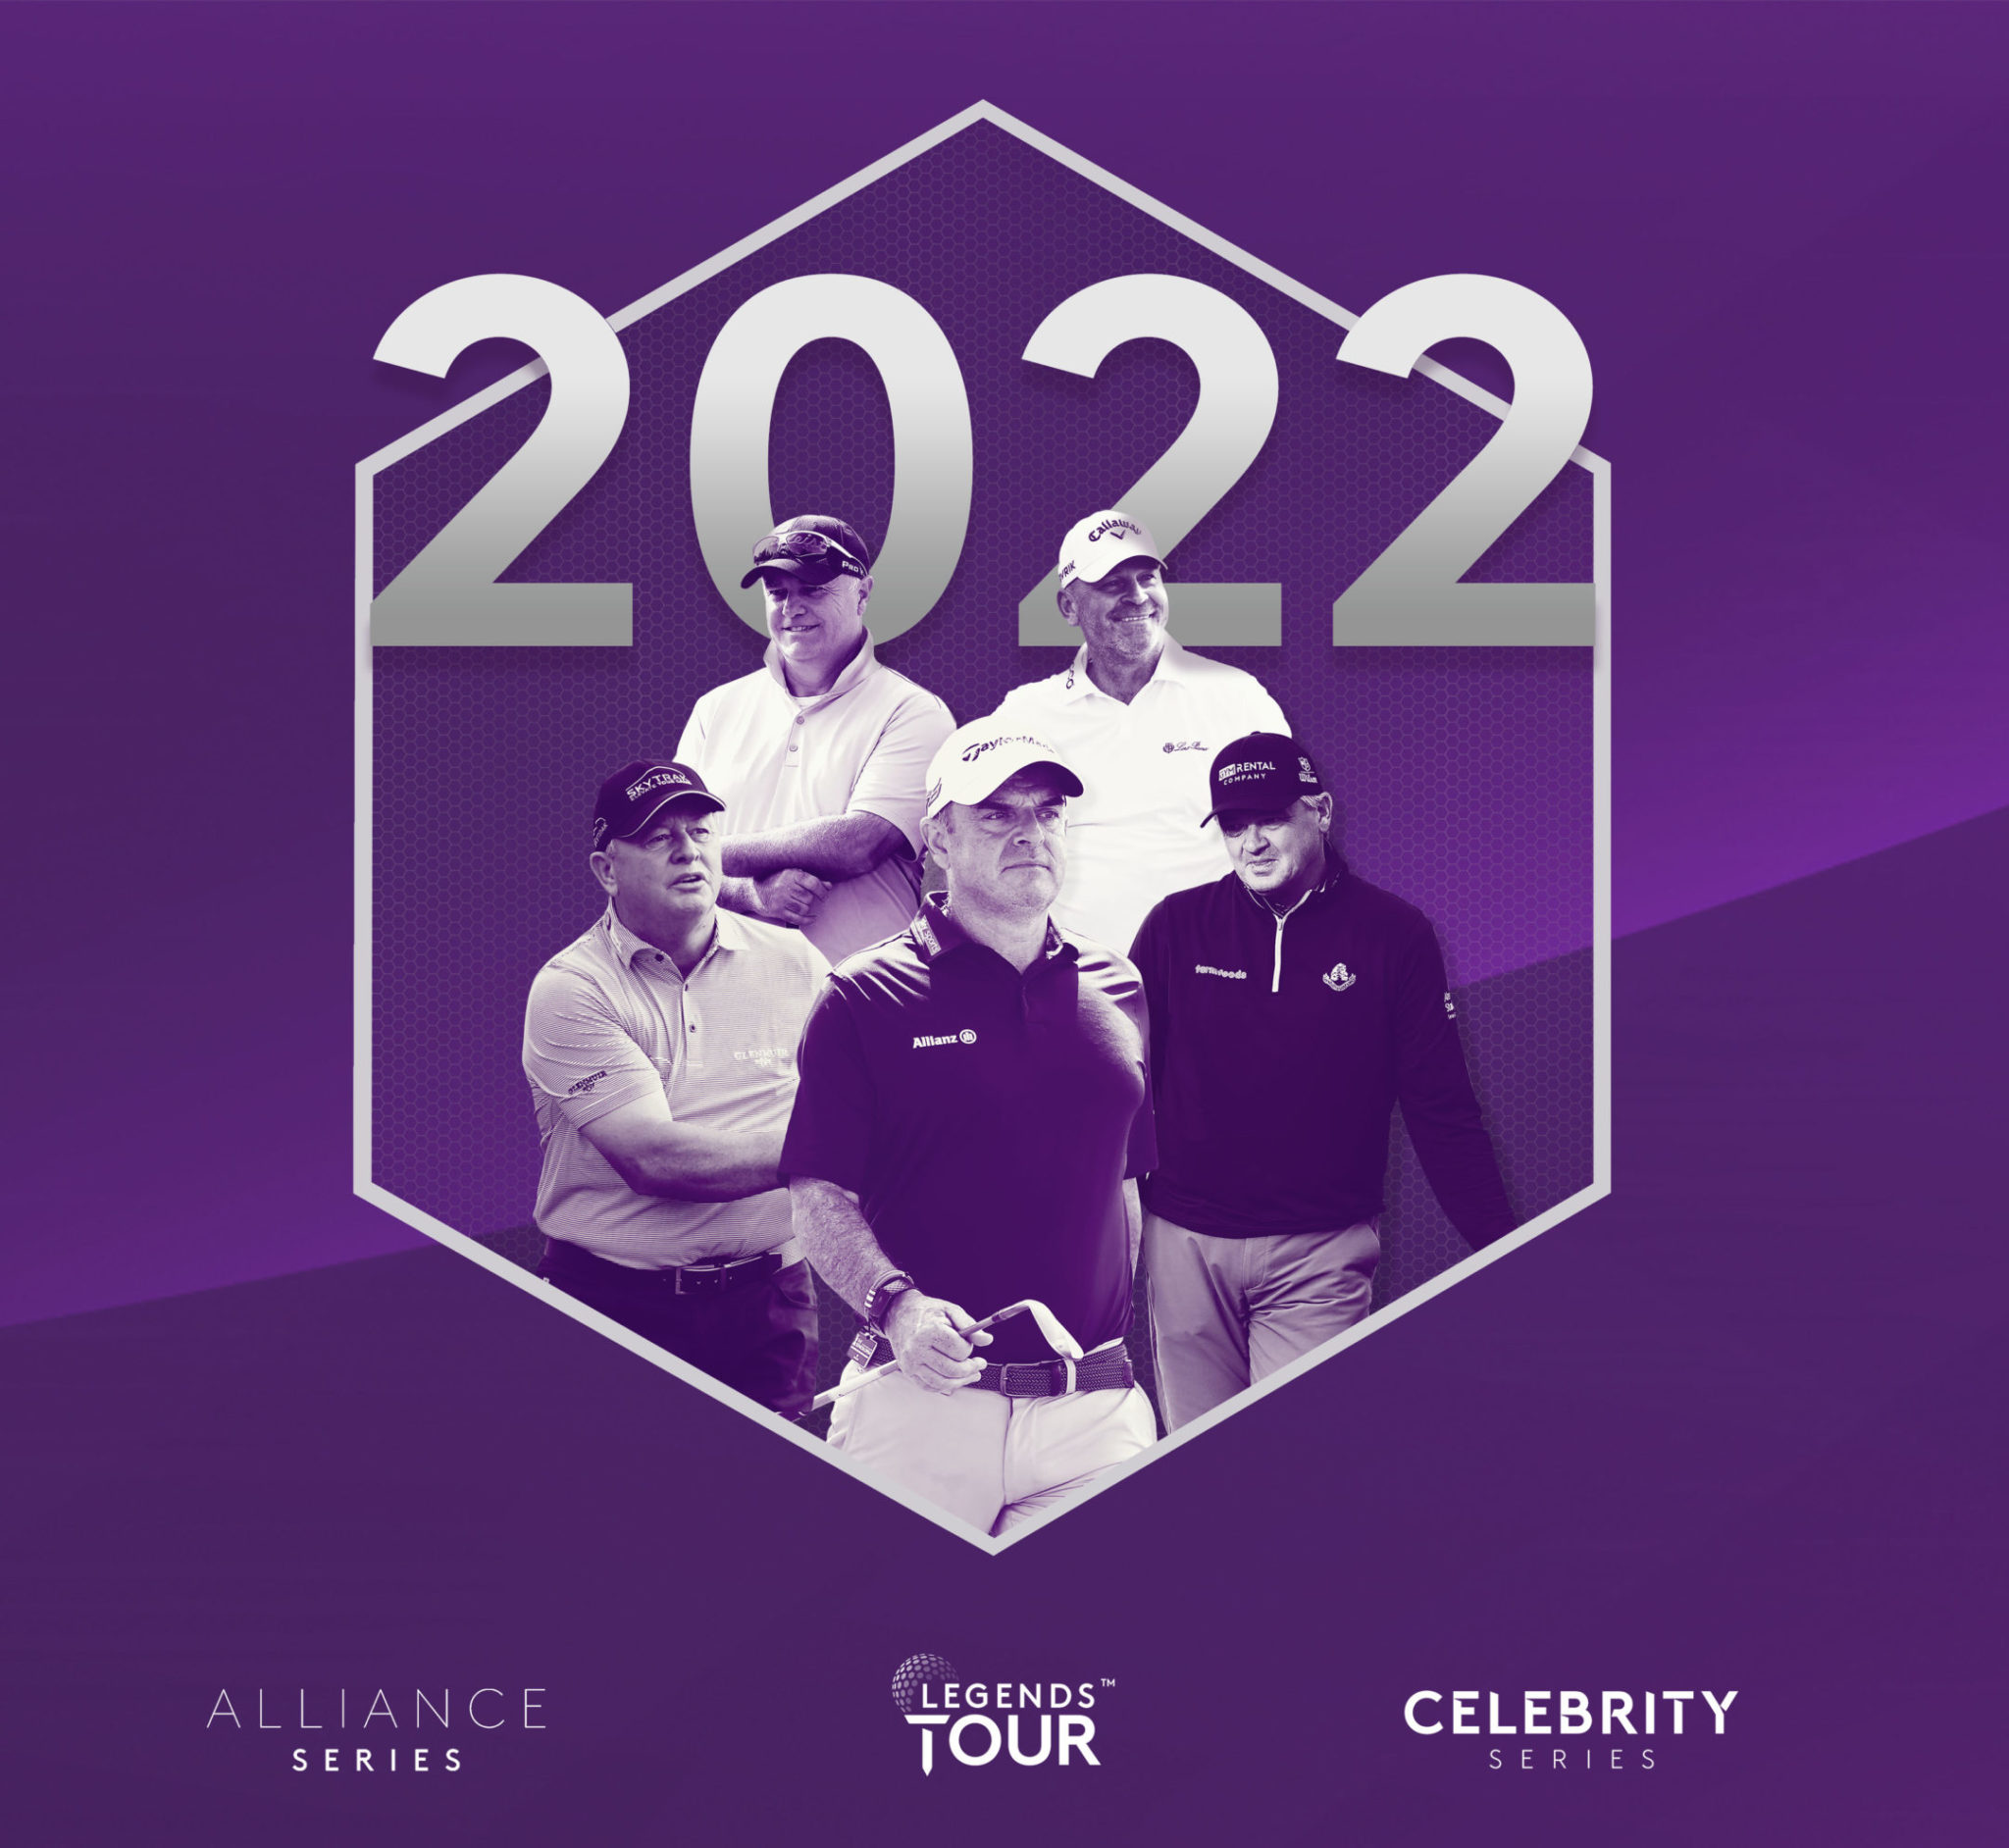 legends tour 2022 prize money